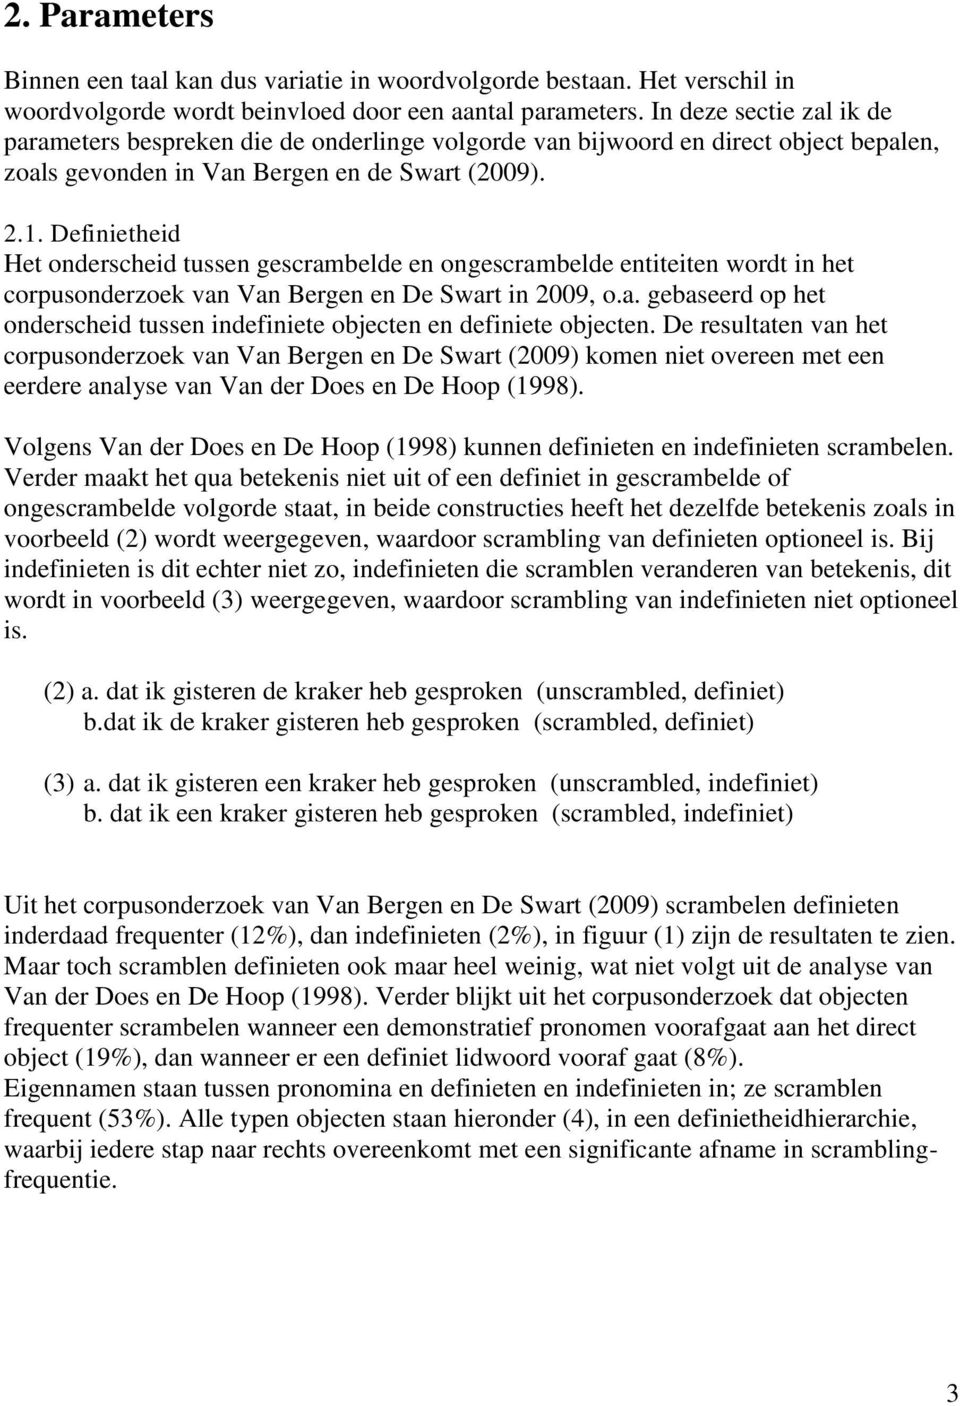 Definietheid Het onderscheid tussen gescrambelde en ongescrambelde entiteiten wordt in het corpusonderzoek van Van Bergen en De Swart in 2009, o.a. gebaseerd op het onderscheid tussen indefiniete objecten en definiete objecten.